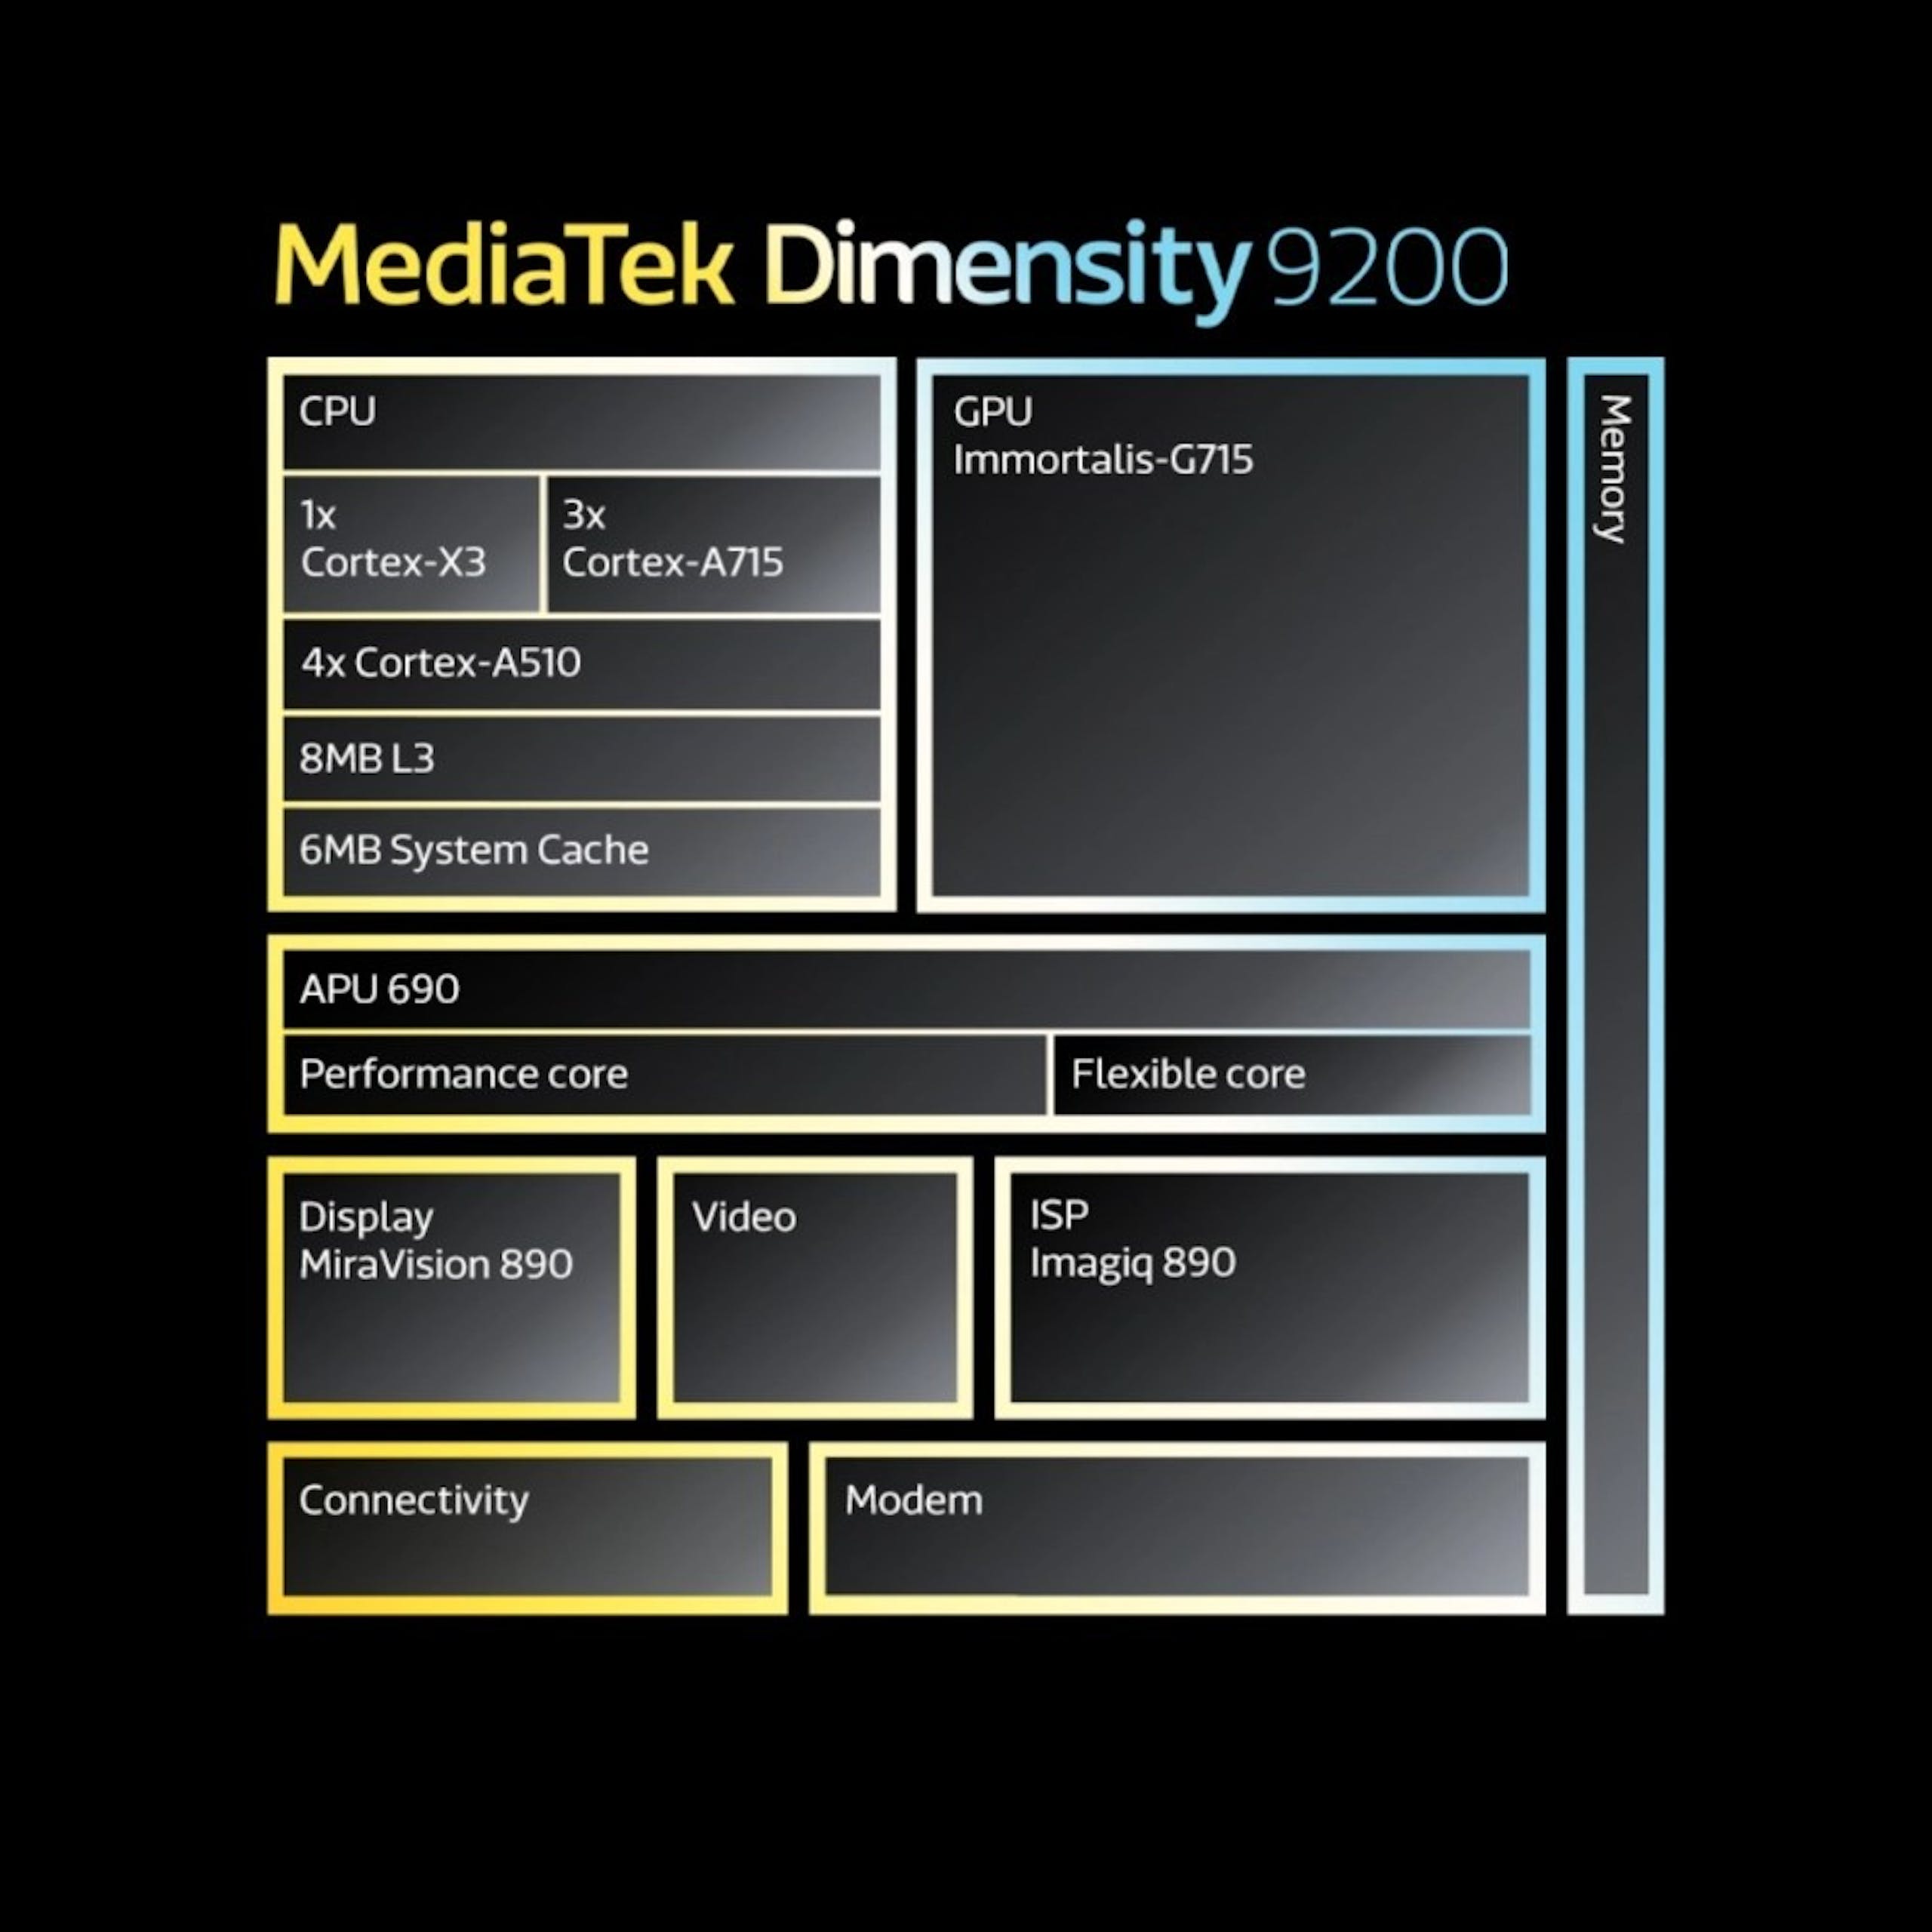 照片中提到了MediaTek Dimensity 9200、CPU、1x，跟艾伯頓有關，包含了聯發科天璣9200、聯發科、聯發科、中央處理器、ARM Cortex-X3